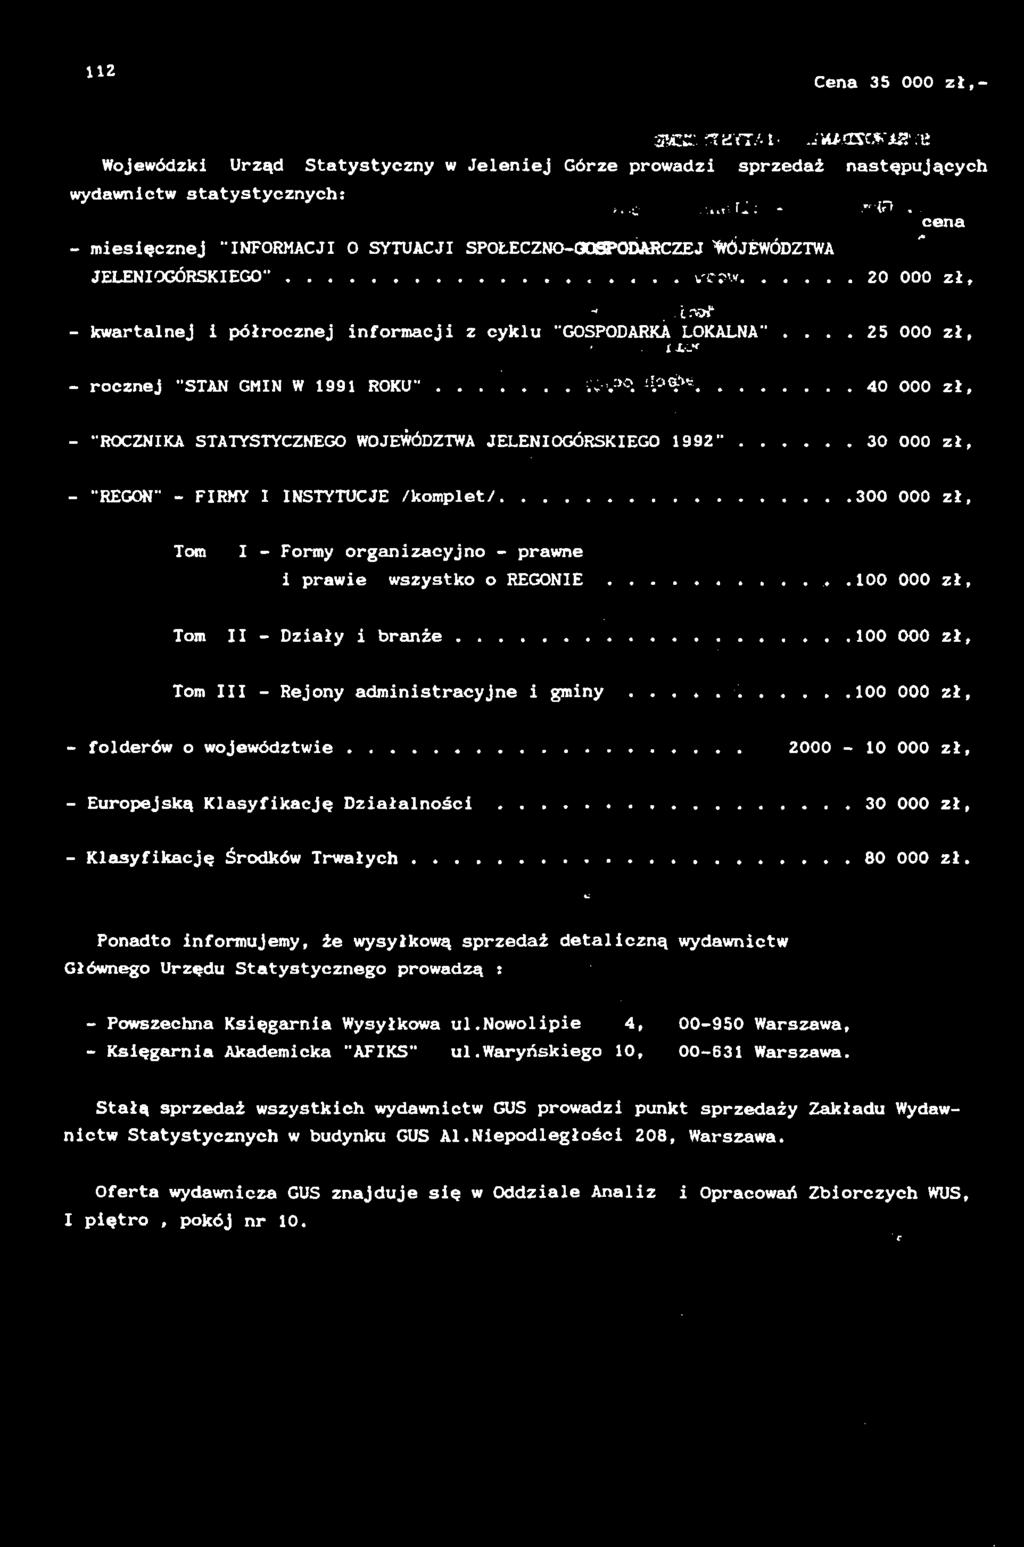 ... ;nv... 20 000 zł,..iryf1 - kwartalnej i półrocznej informacji z cyklu "GOSPODARKA LOKALNA"... 25 000 zł, i L- ' - rocznej "STAN GMIN W 1991 ROKU".